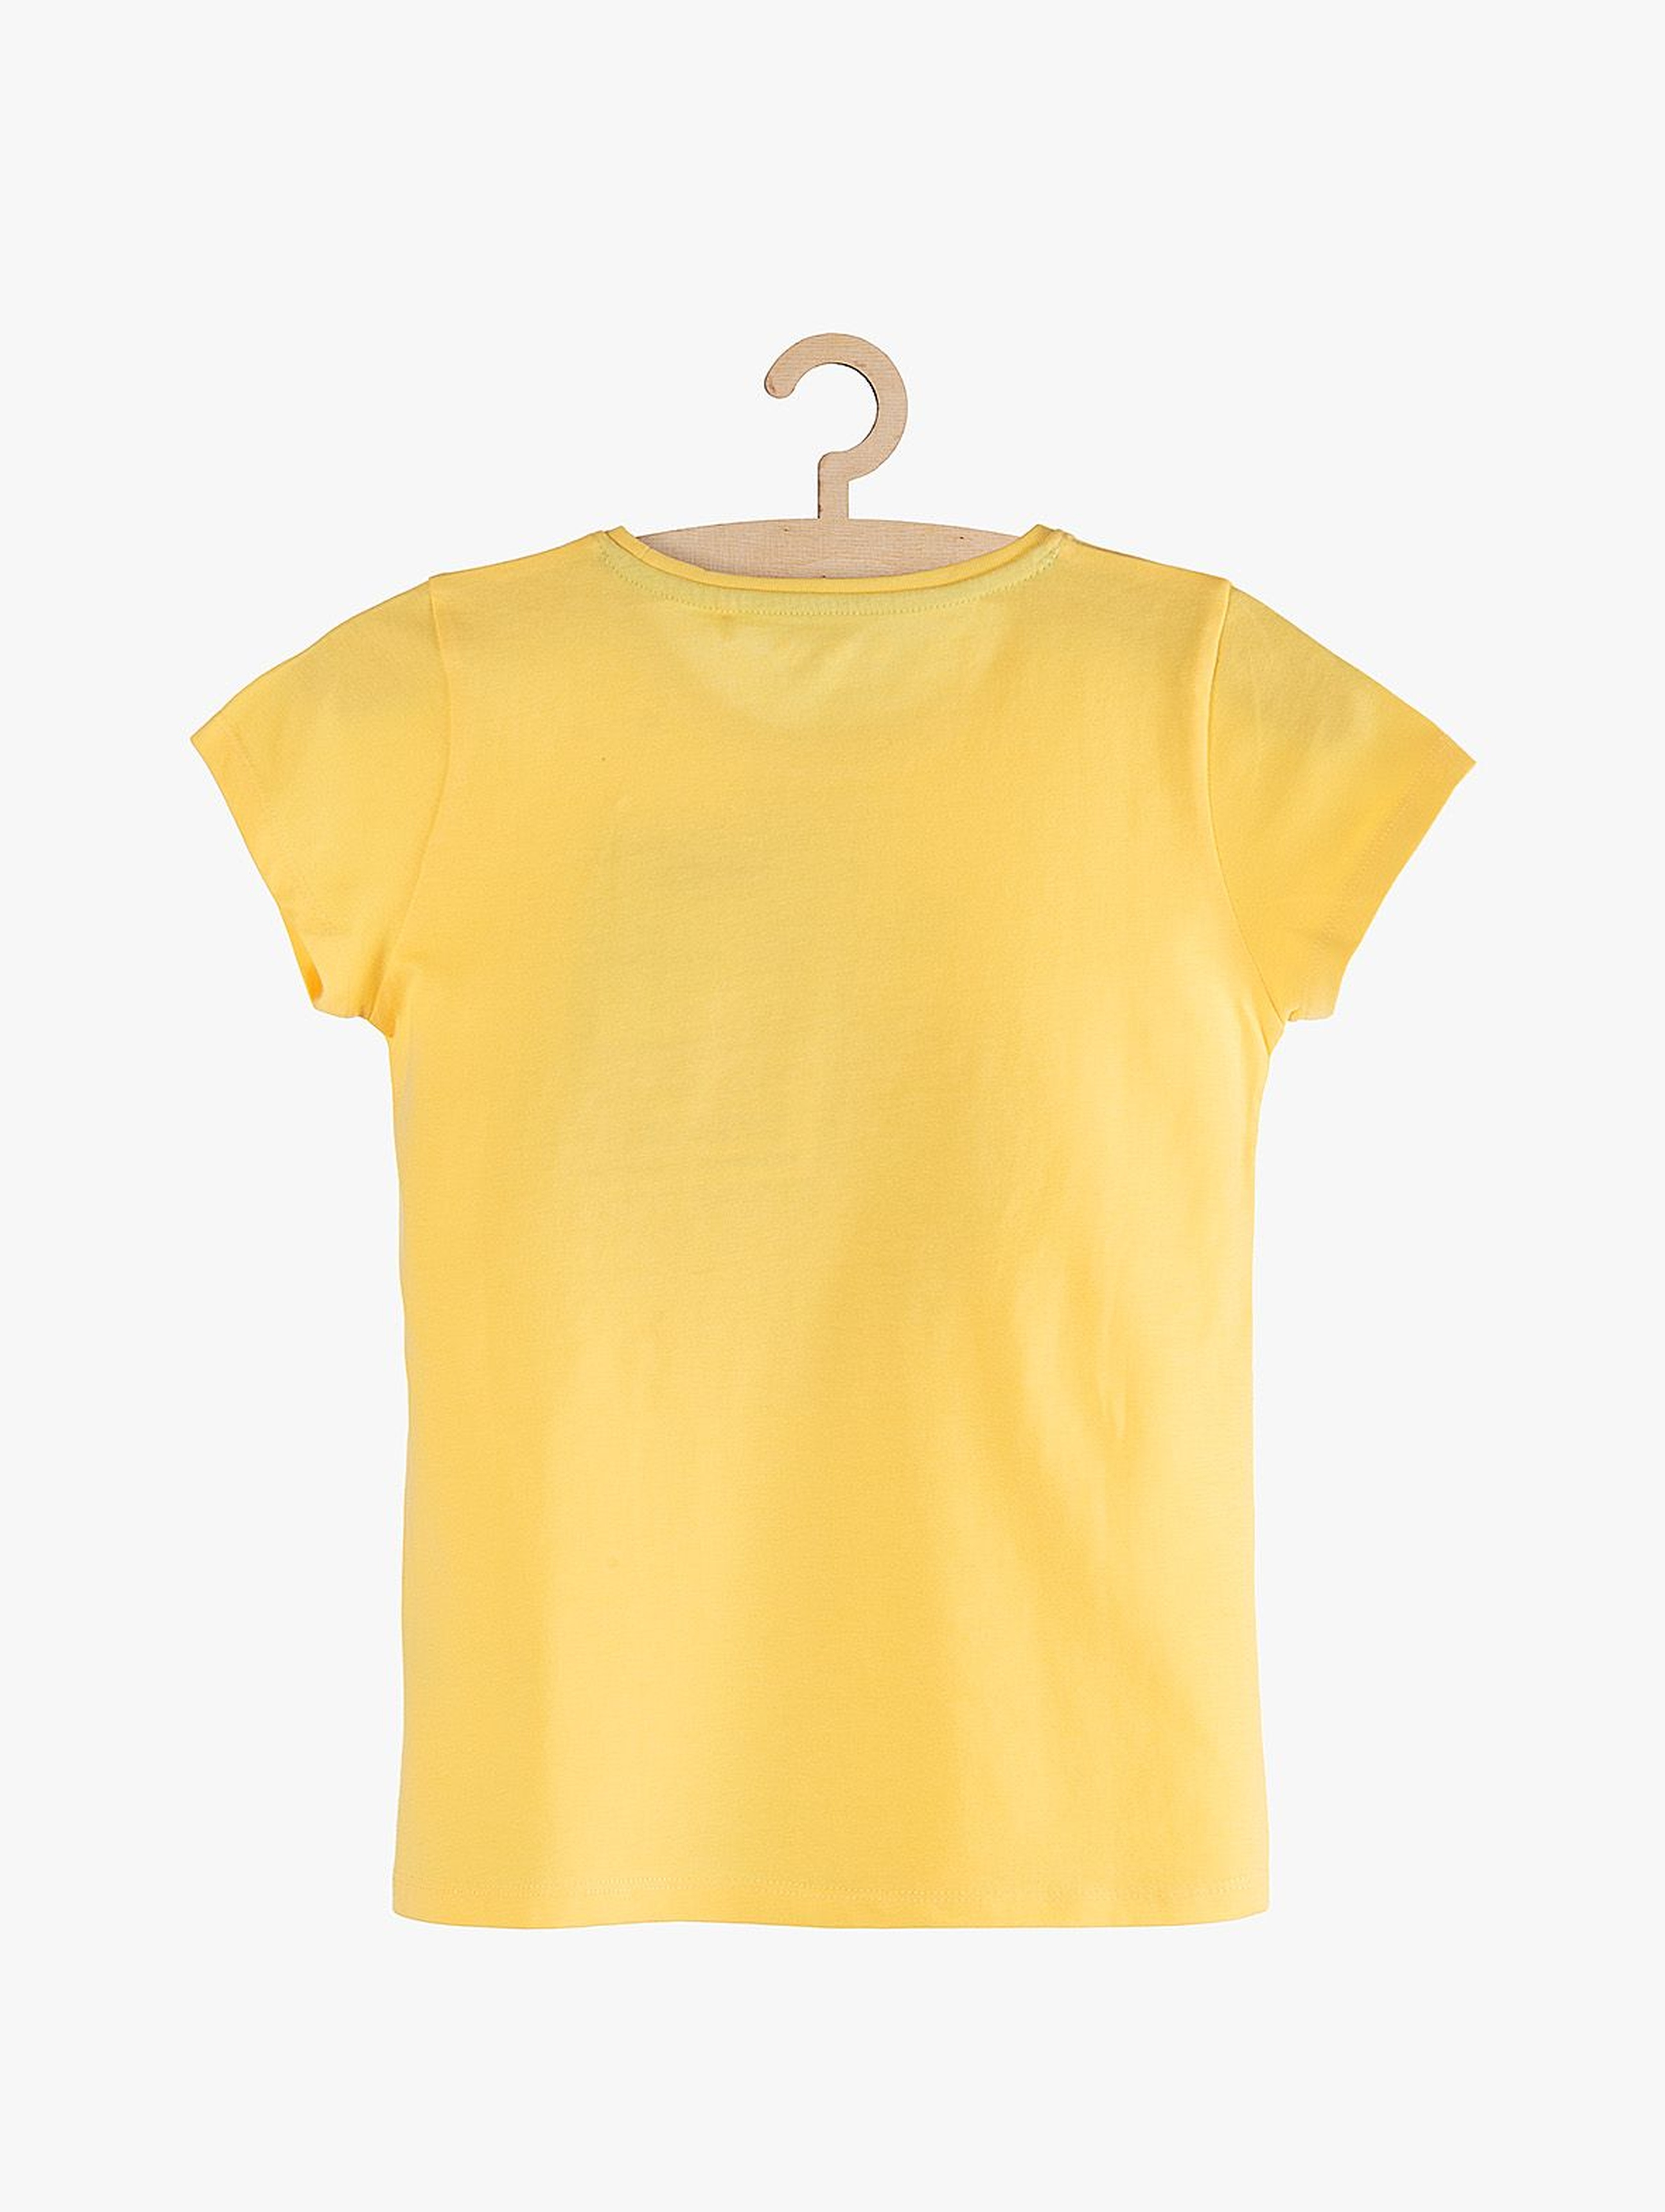 T-shirt dziewczęcy żółty z dwustronnymi cekinami